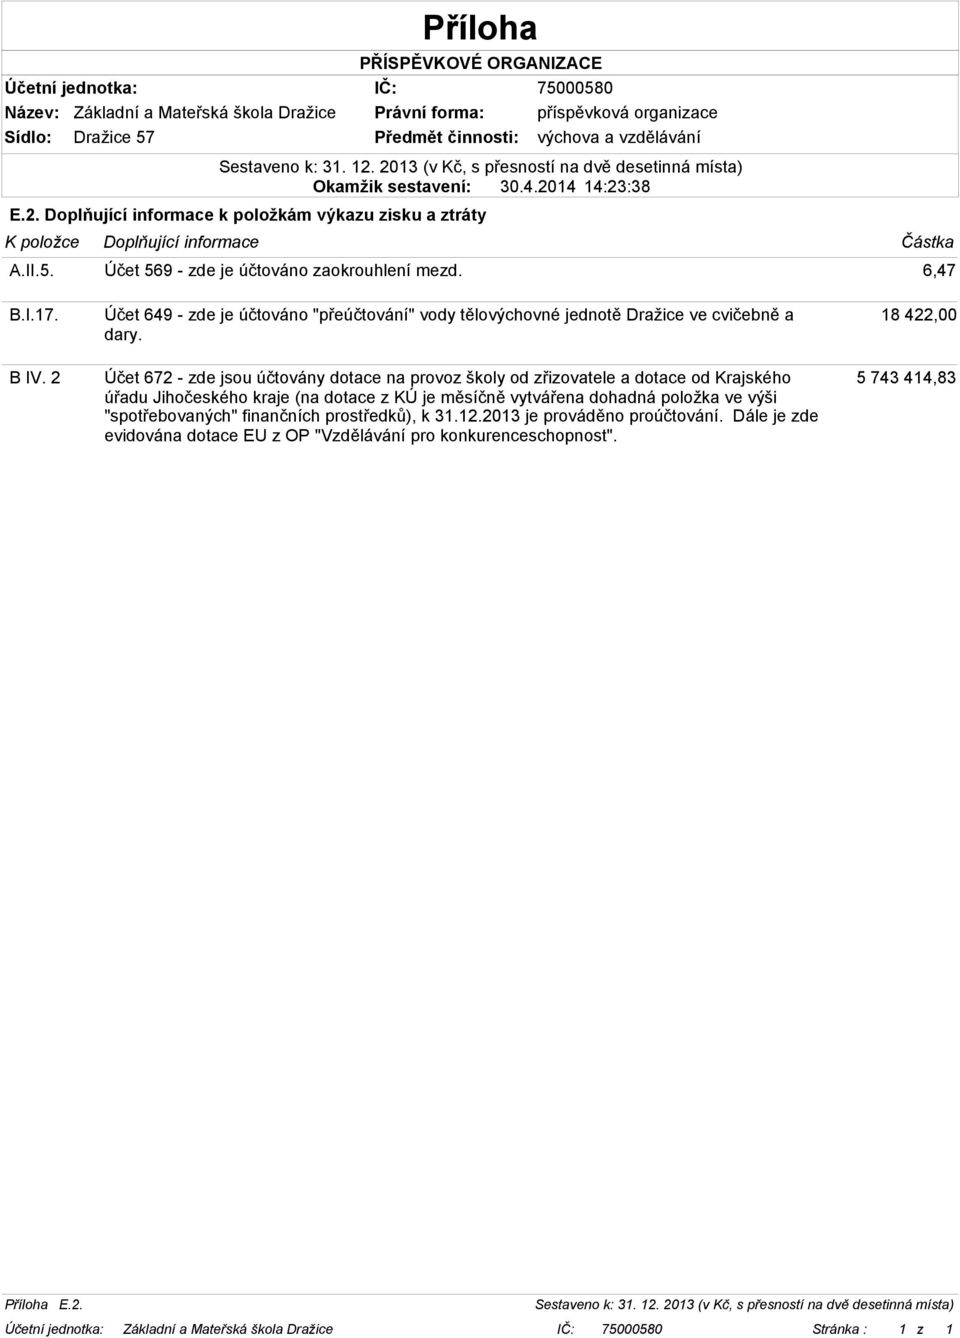 2 Účet 649 - zde je účtováno "přeúčtování" vody tělovýchovné jednotě Dražice ve cvičebně a dary.